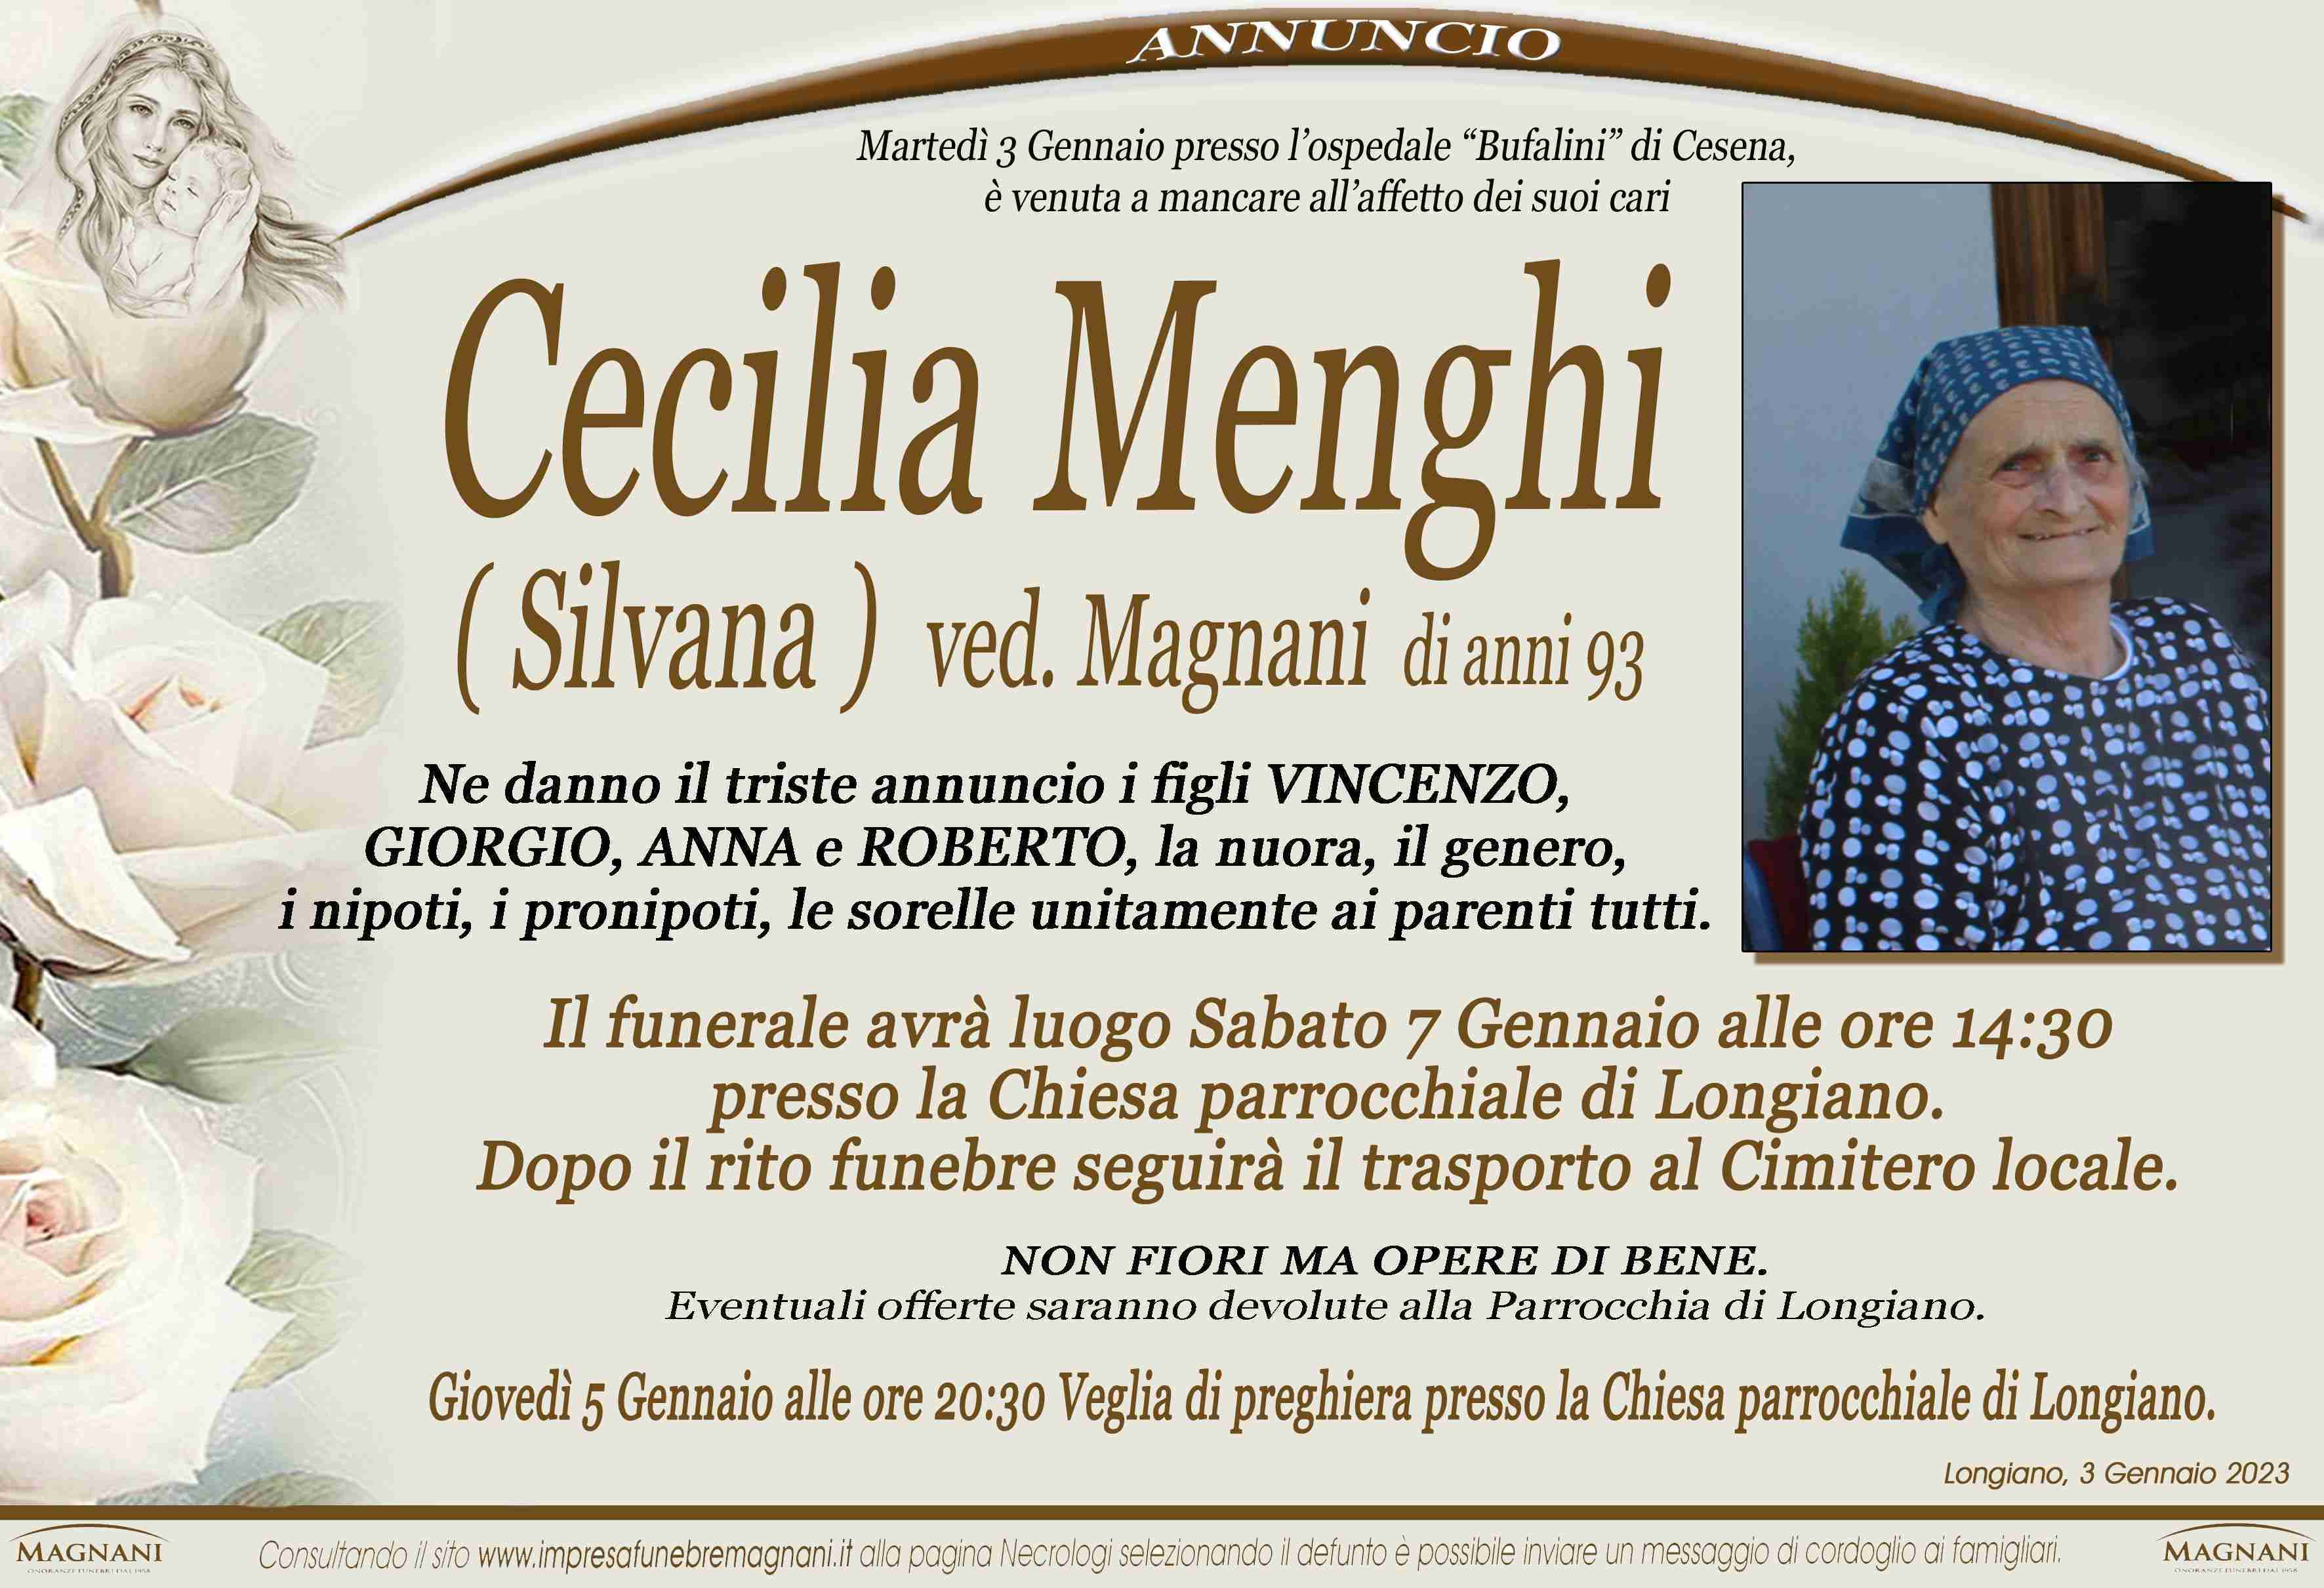 Cecilia Menghi (Silvana)